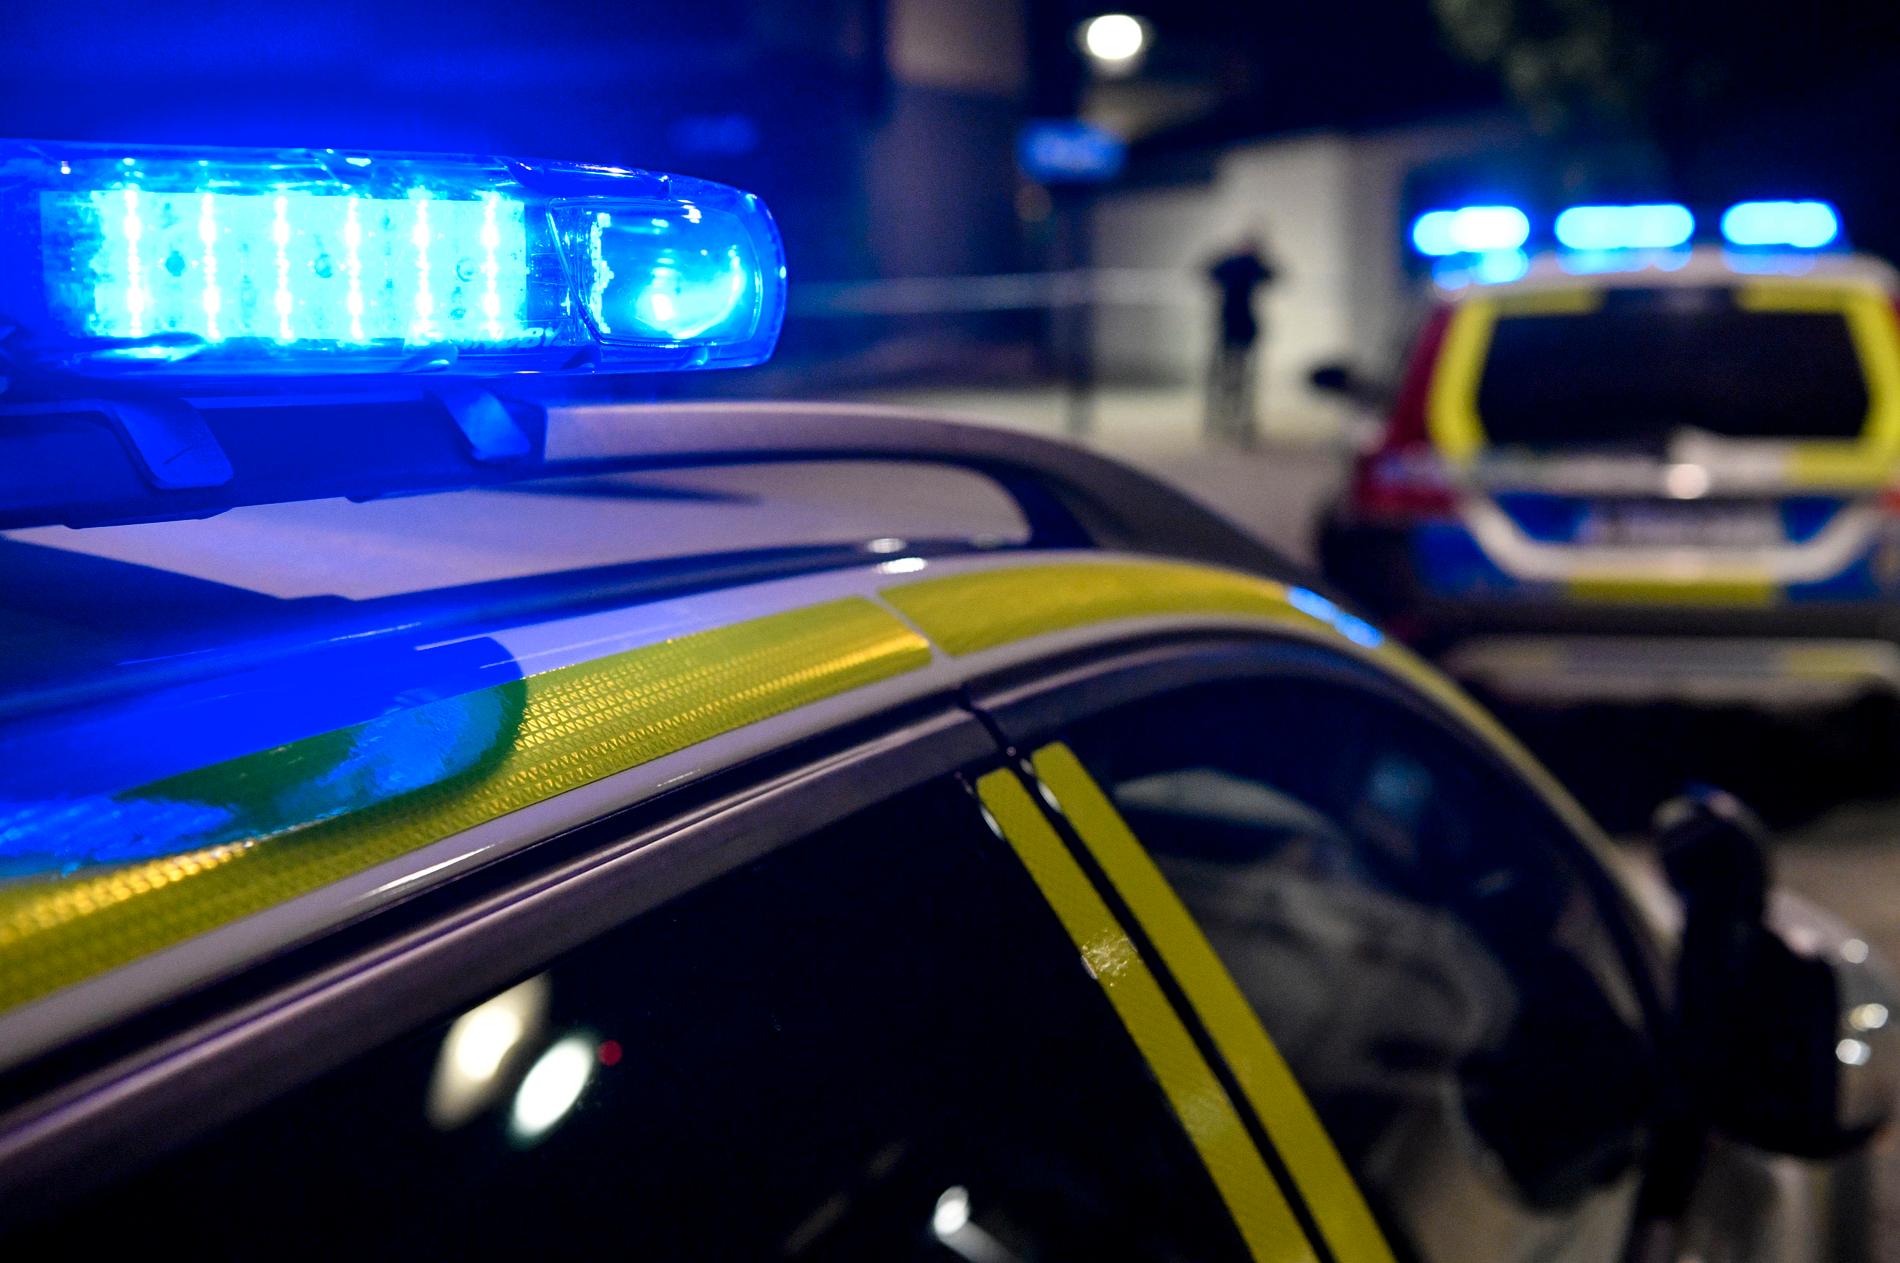 En man i 40-årsåldern misstänks för mord sedan en kvinna på julaftonen hittades livlös i en lägenhet i Västerås. Arkivbild.